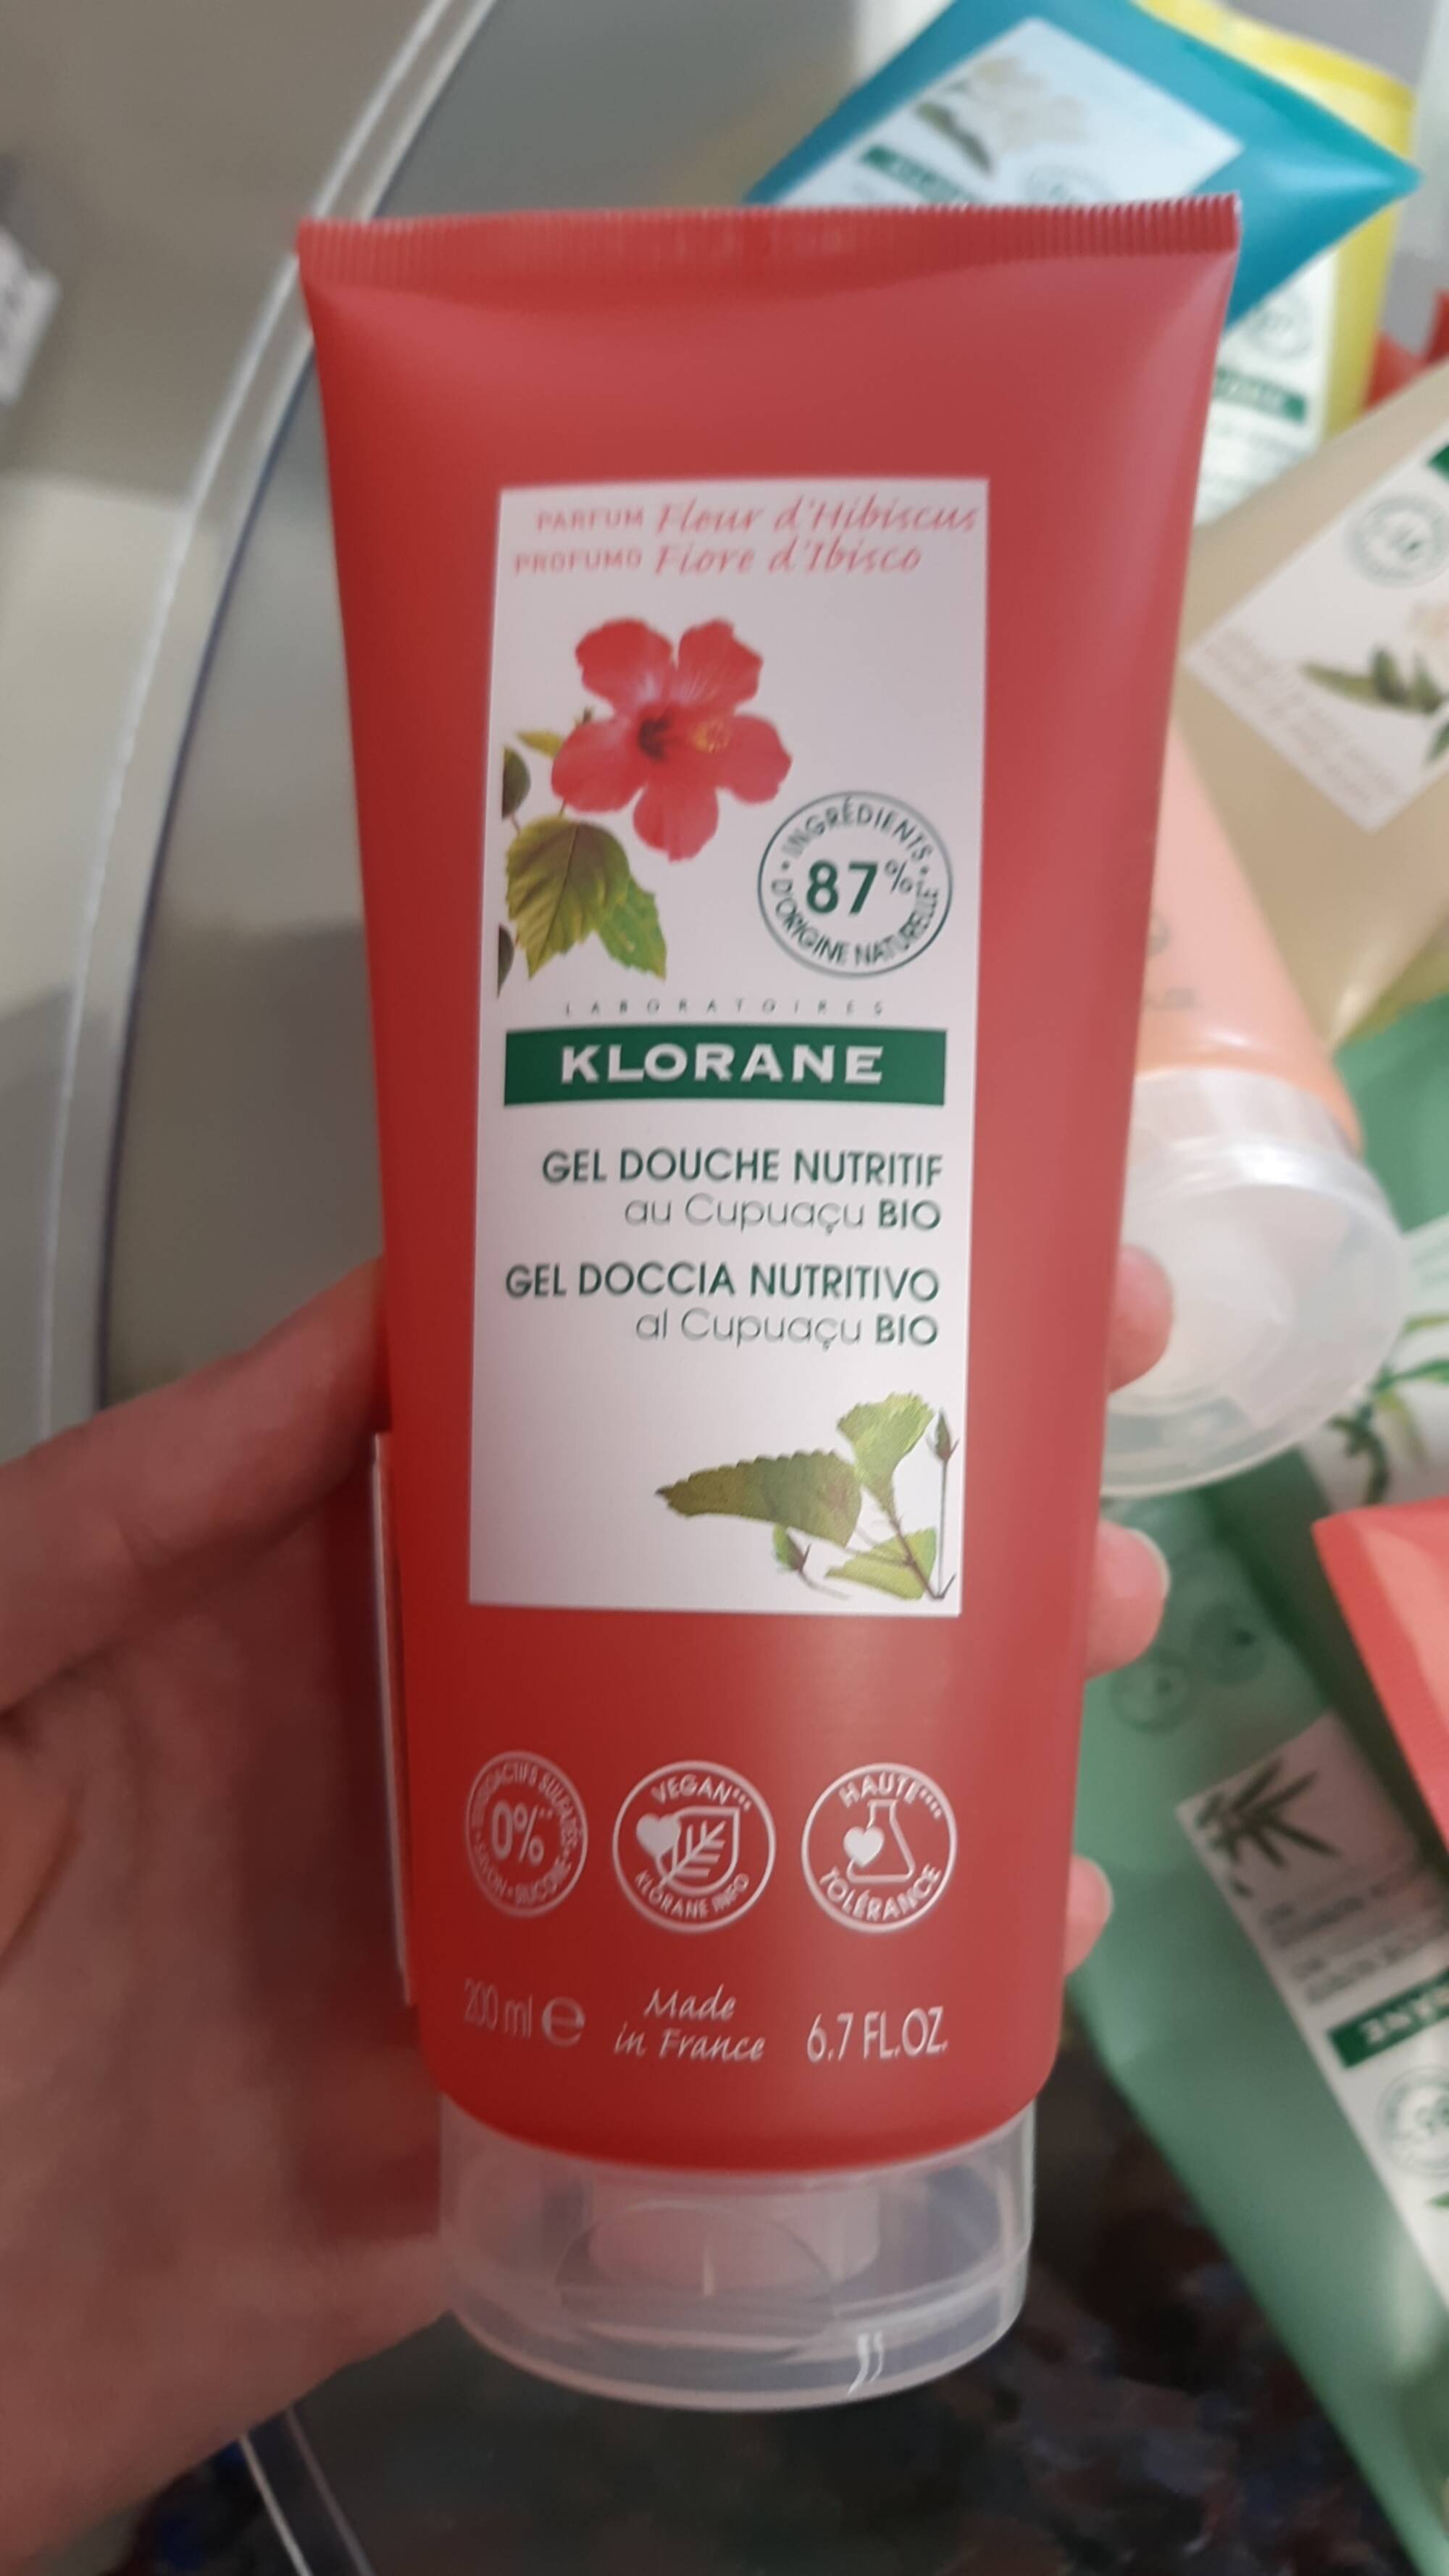 KLORANE - Gel douche nutritif au Cupuaçu bio